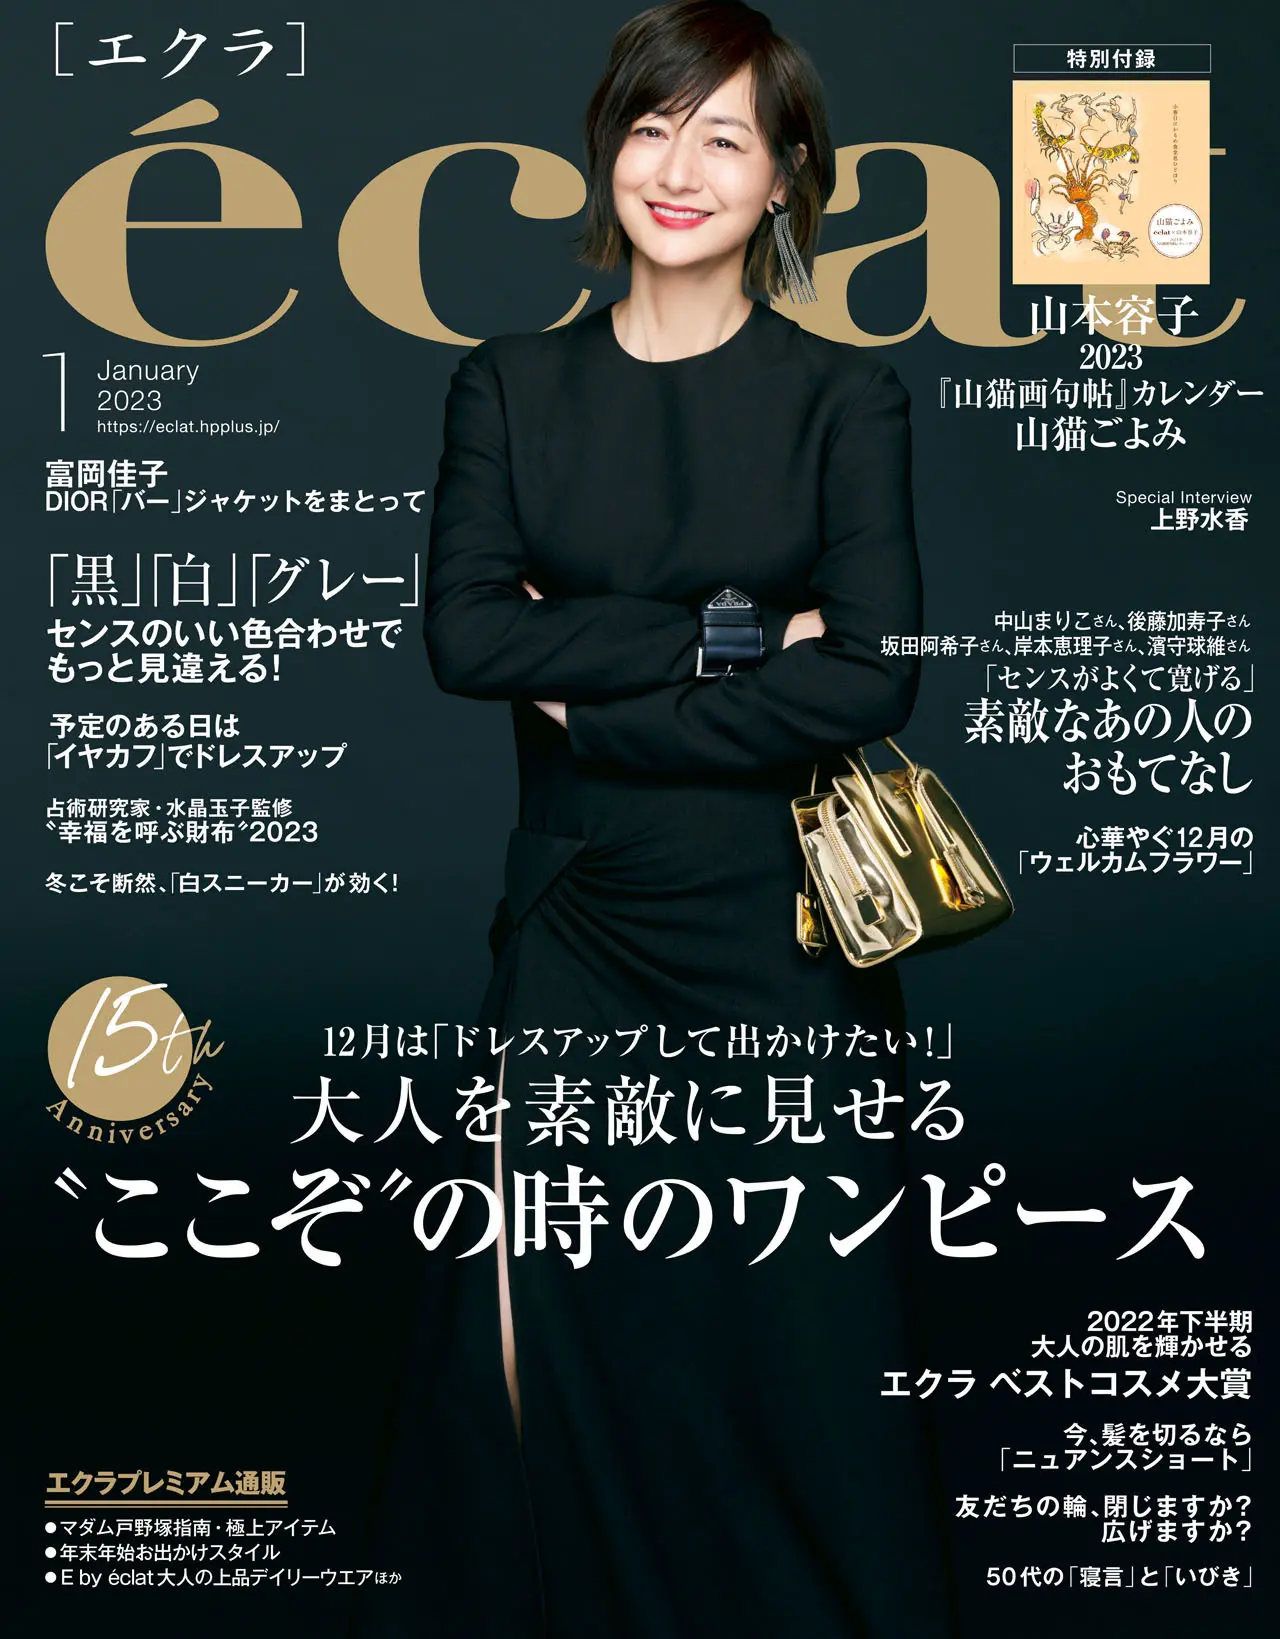 エクラ1月号表紙。カバーモデルは富岡佳子さん。